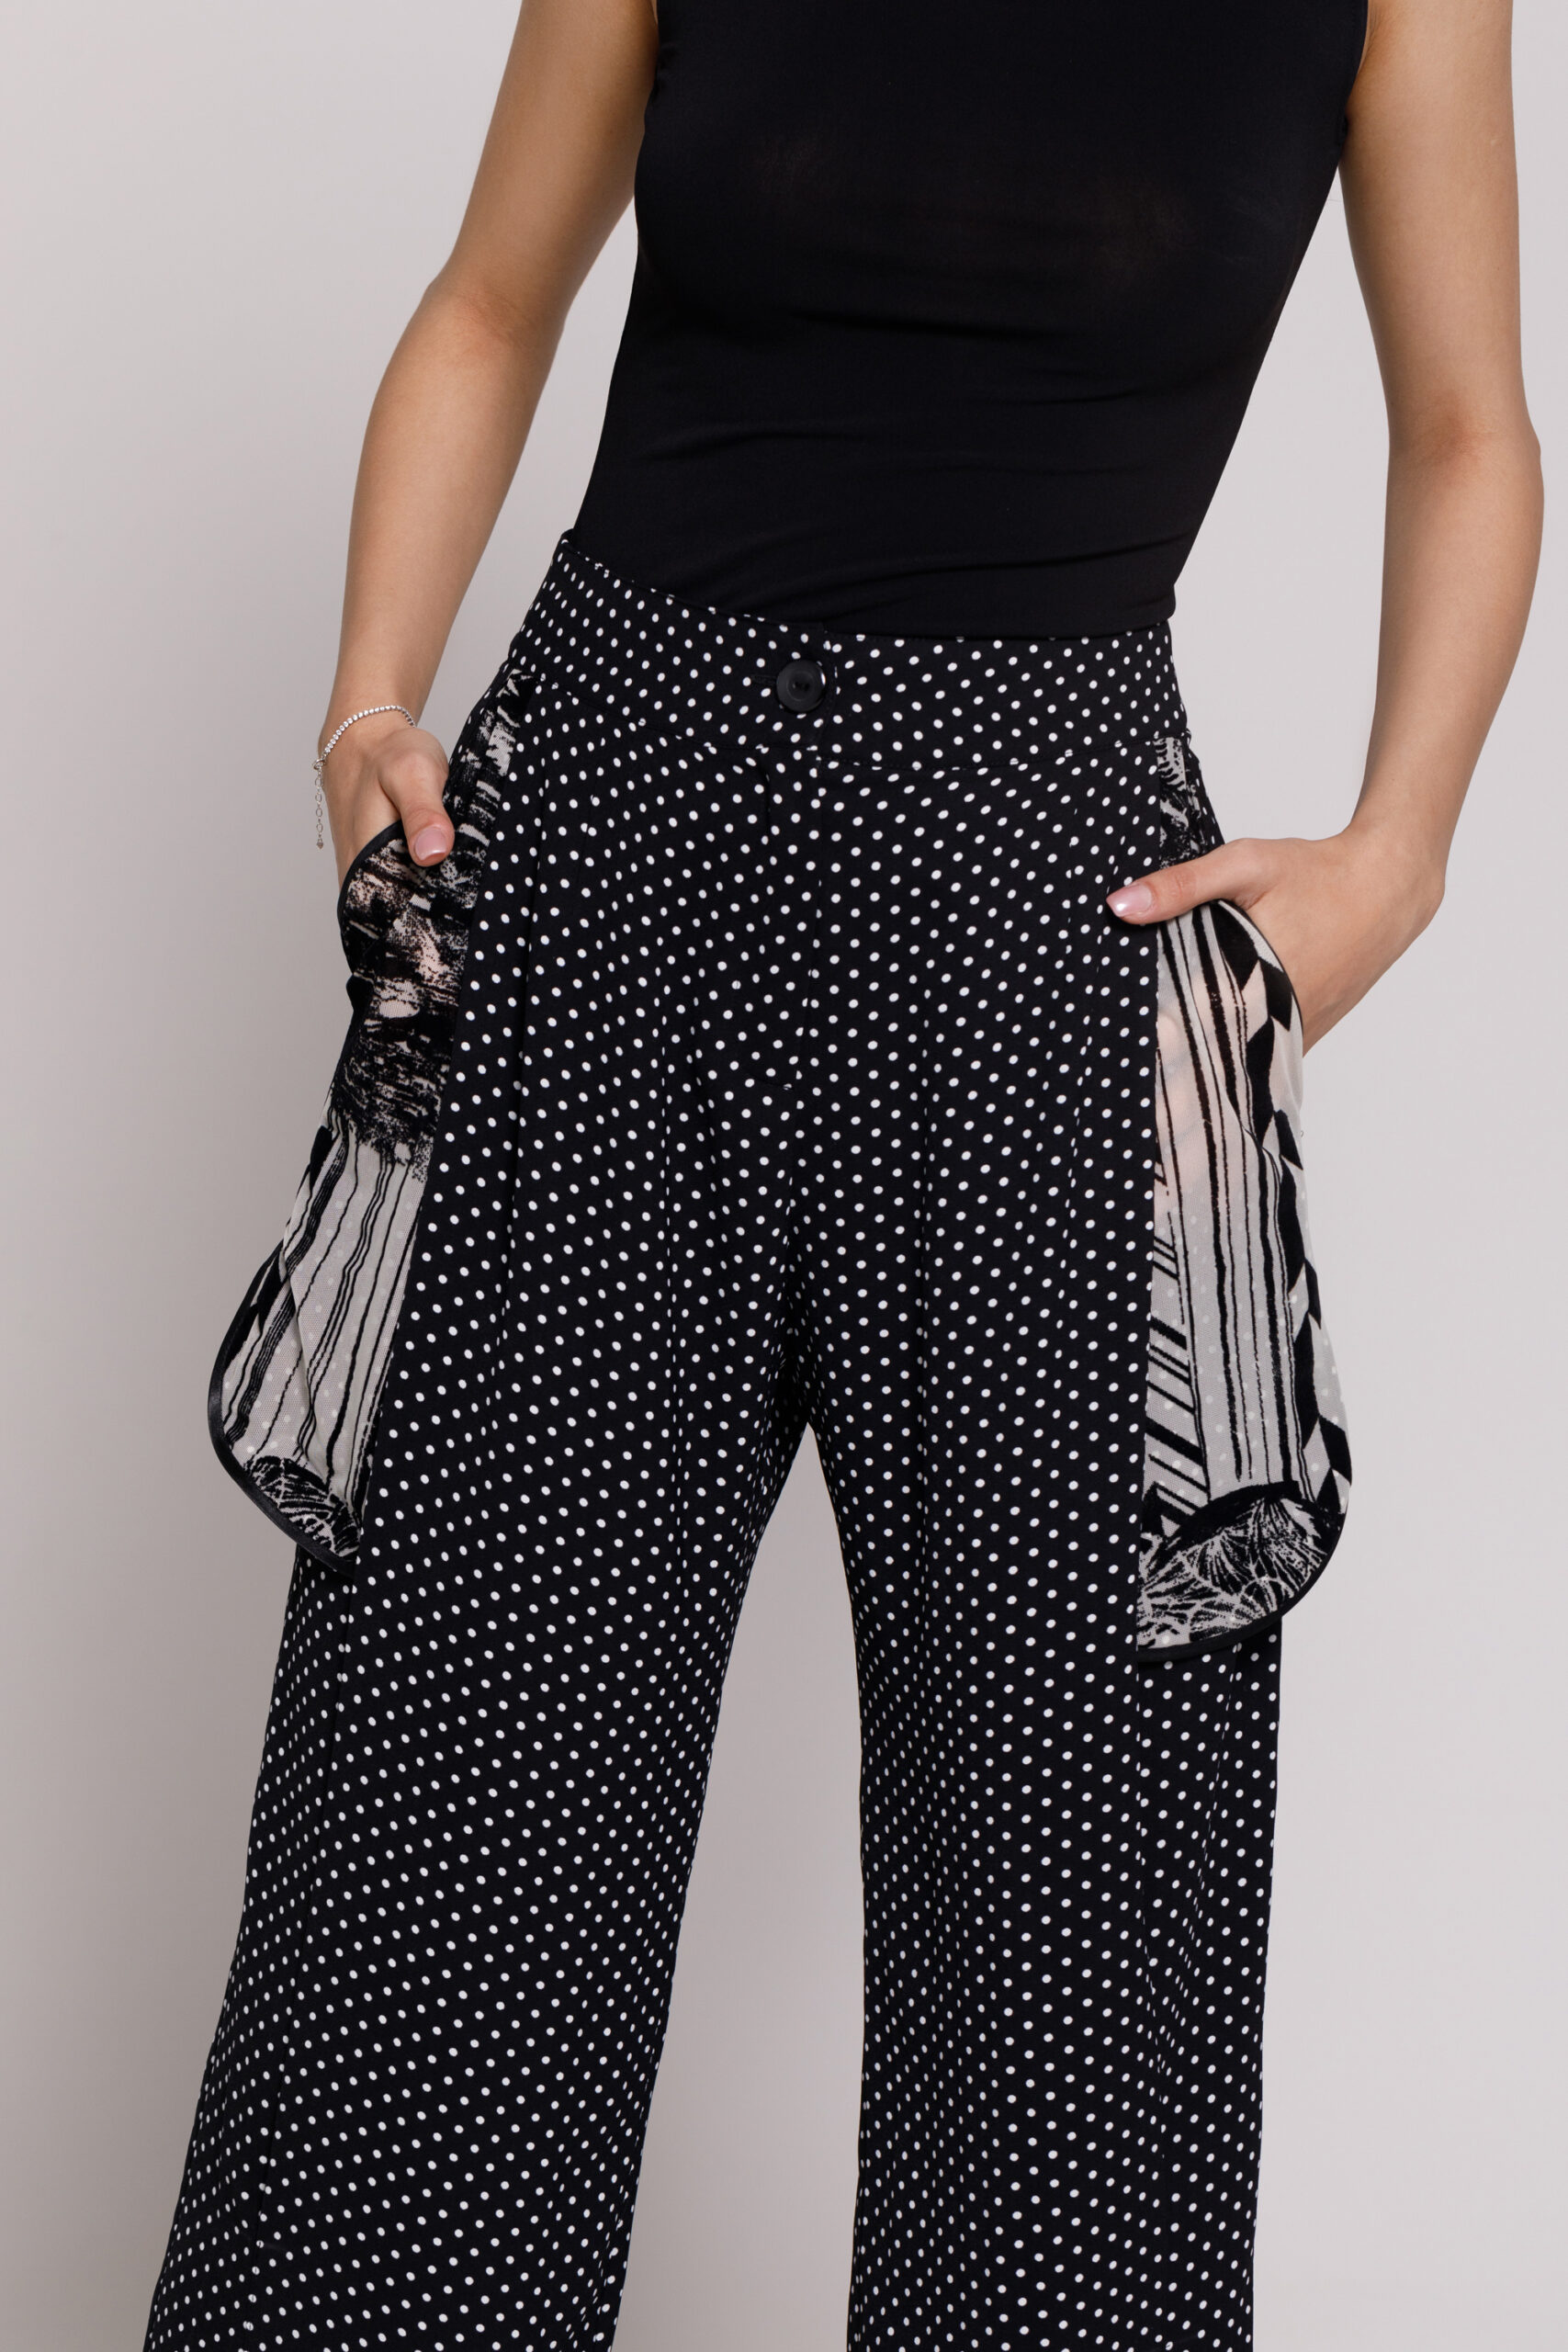 Pantalon ROCO elegant din viscoza si tul negru. Materiale naturale, design unicat, cu broderie si aplicatii handmade